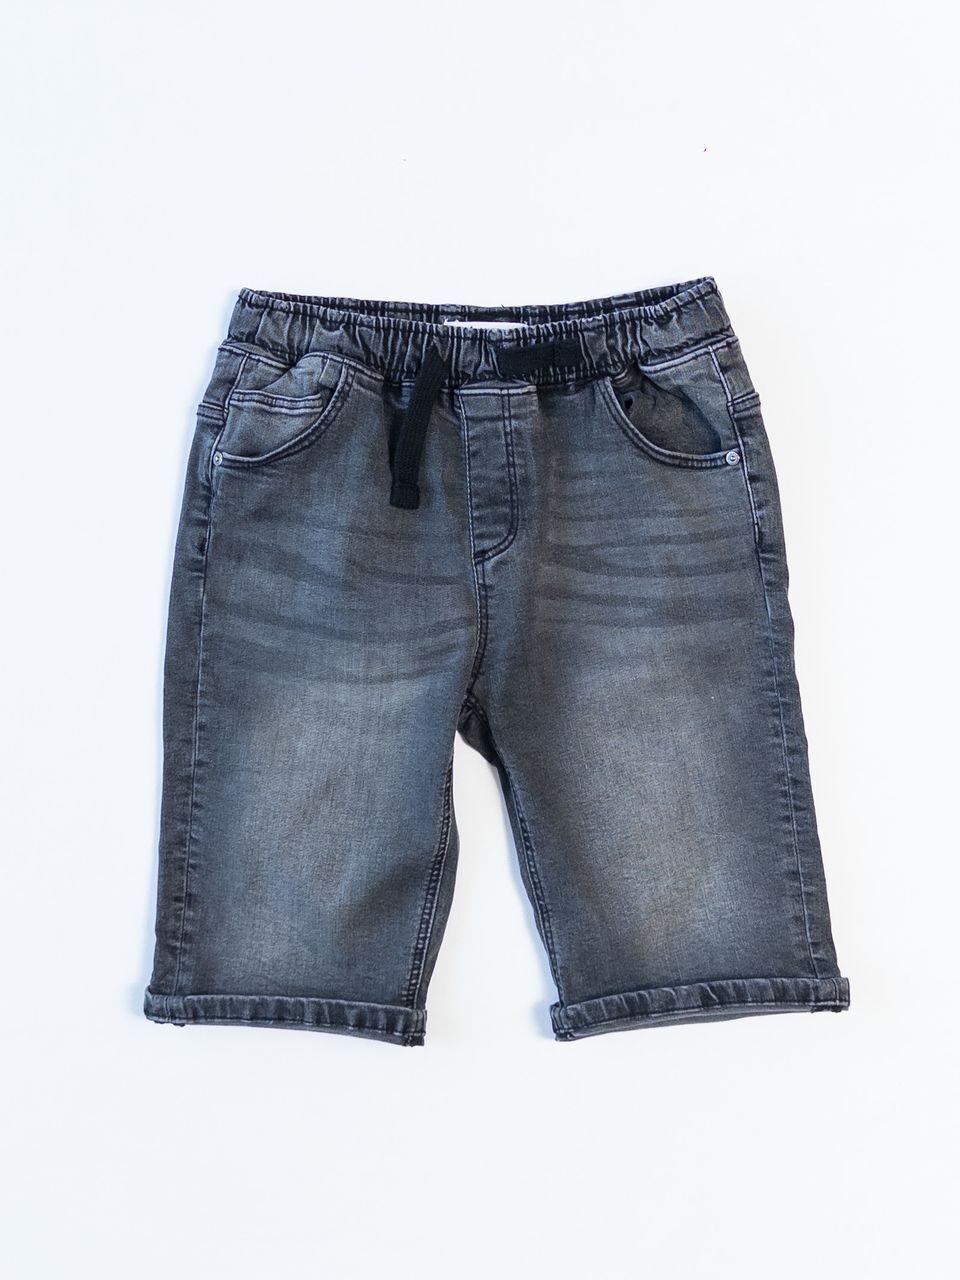 Шорты джинсовые плотные для мальчика на резинке цвет темно-серый на рост 140 см. RESERVED